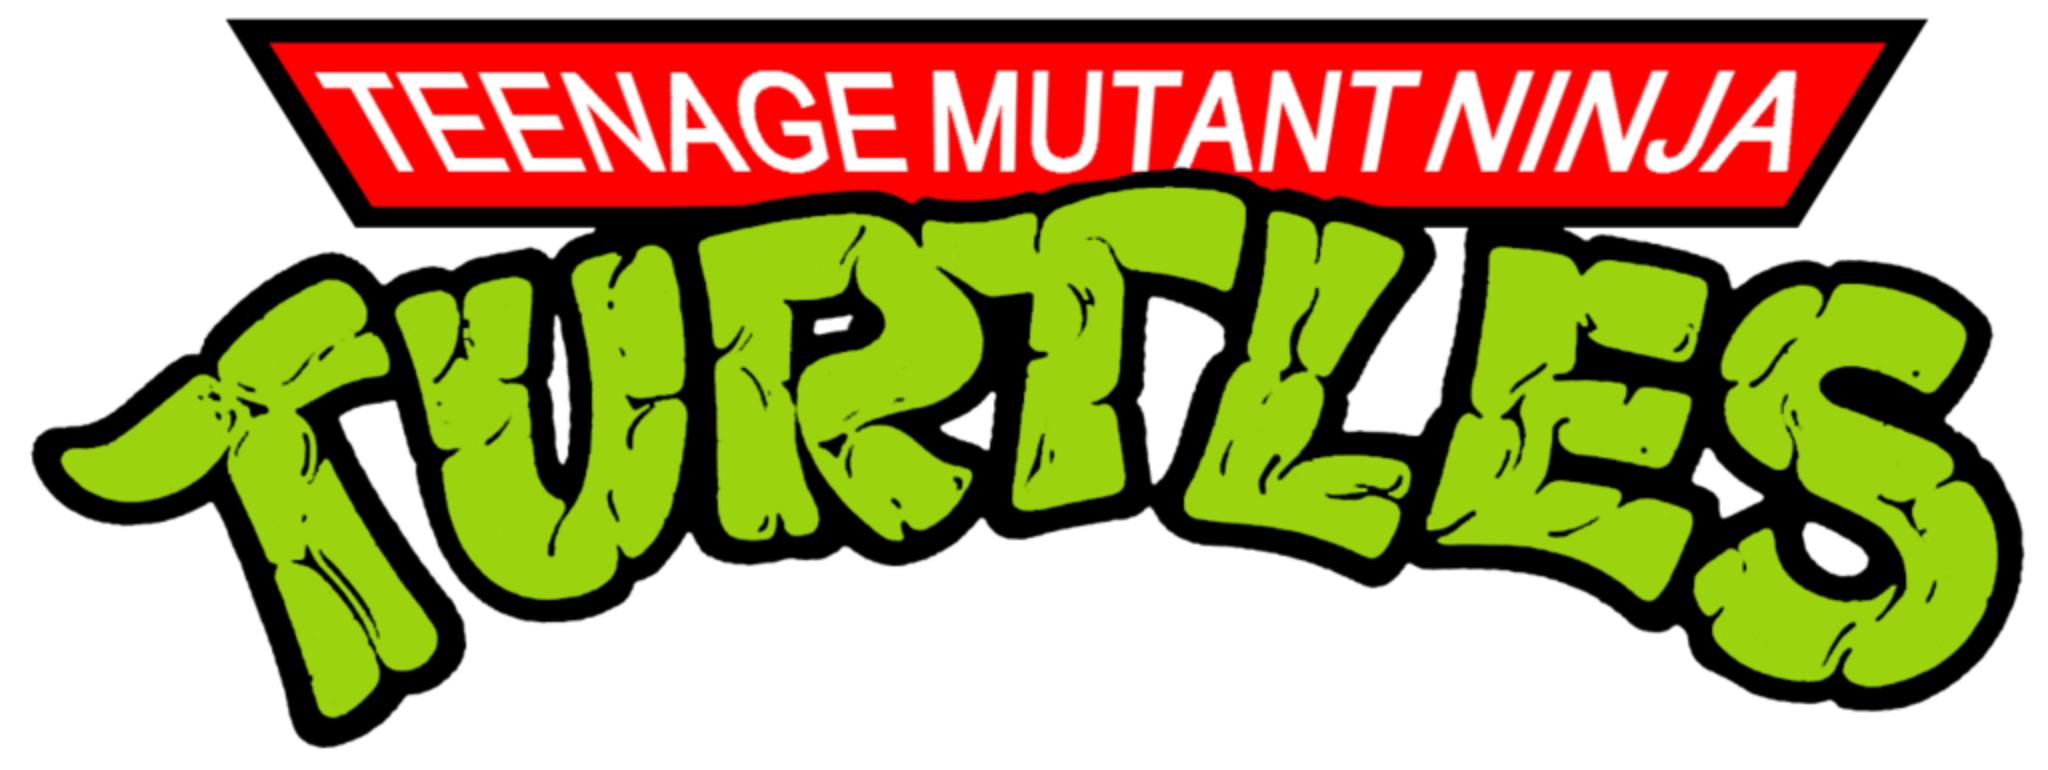 Teenage Mutant Ninja Turtles 1987 Volume 3 (6 DVDs Box Set)